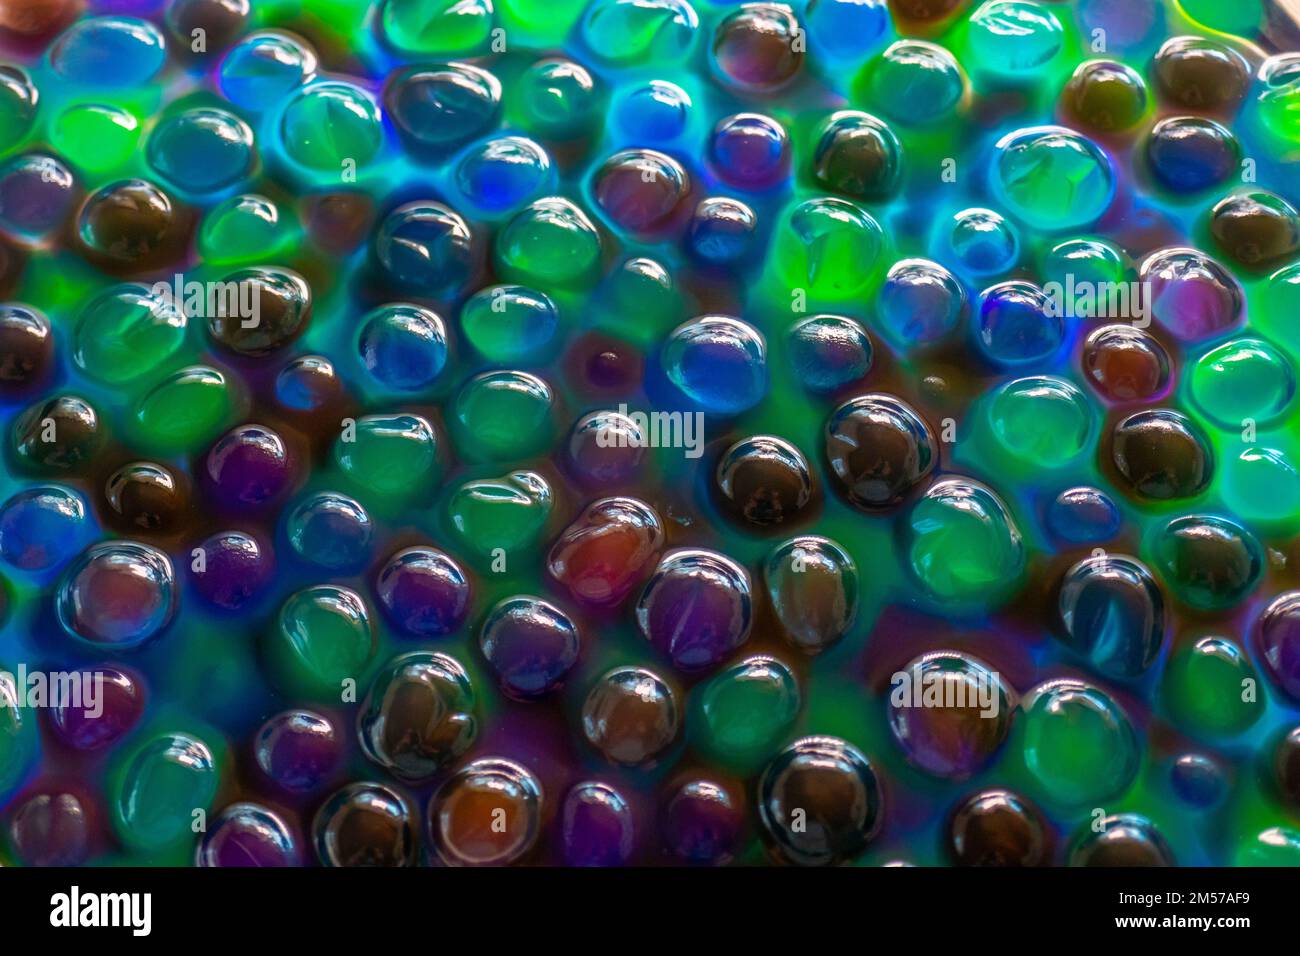 Hydrogelkugeln für Dekoration, Gartenarbeit und Luftbefeuchter. Hintergrund in kühlen Farben. Mehrfarbige Orbiz-Struktur. Stockfoto